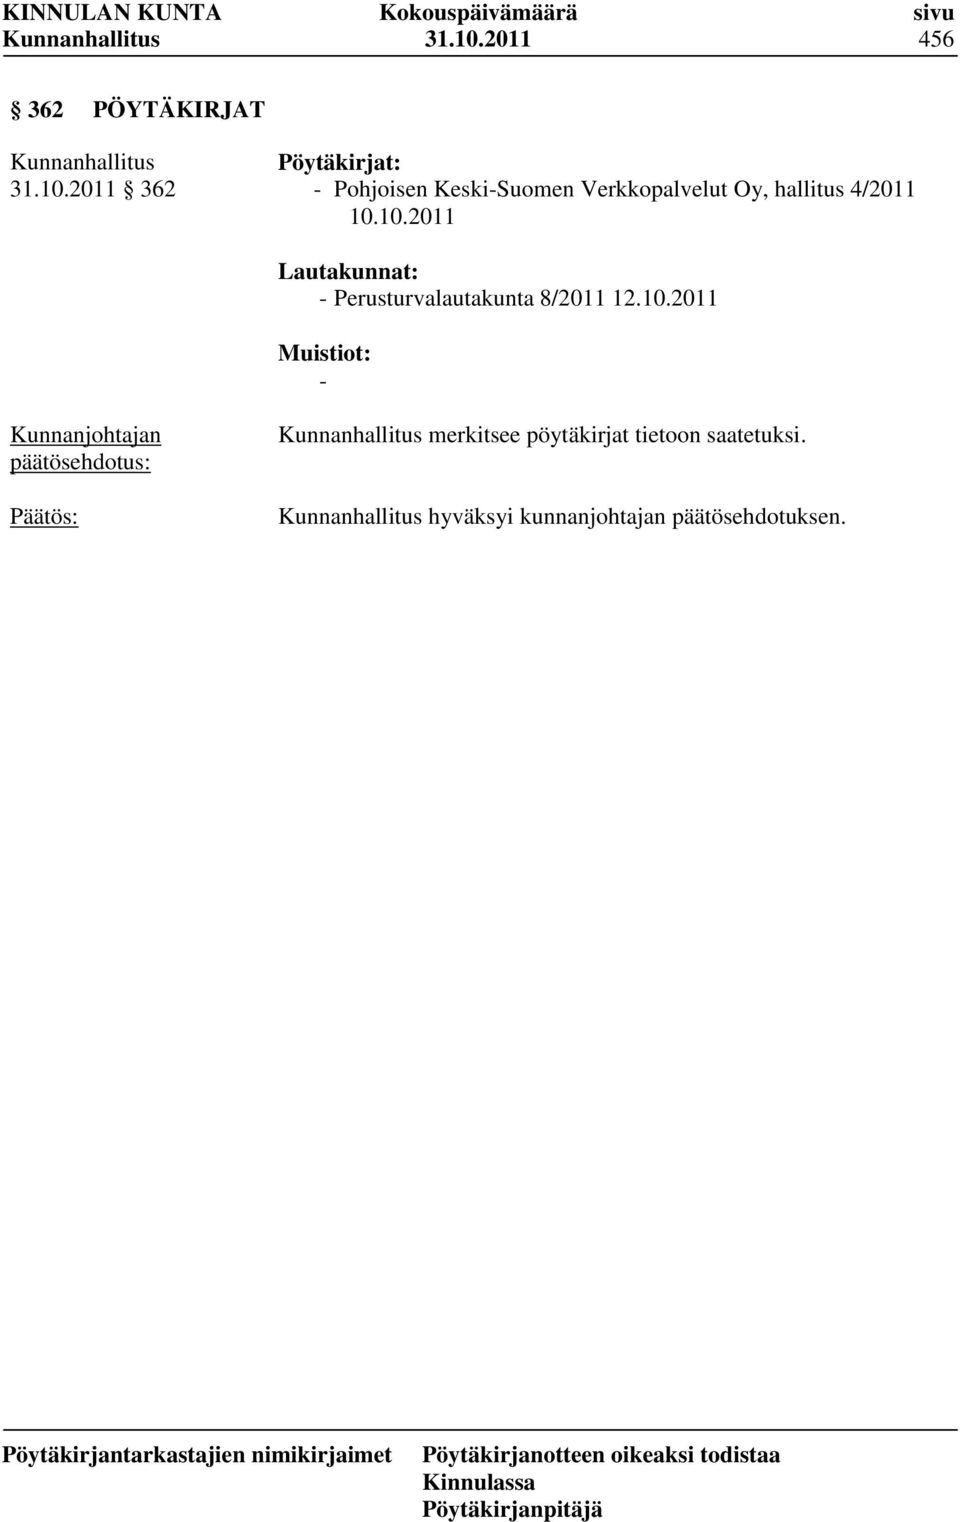 Keski-Suomen Verkkopalvelut Oy, hallitus 4/2011 10.